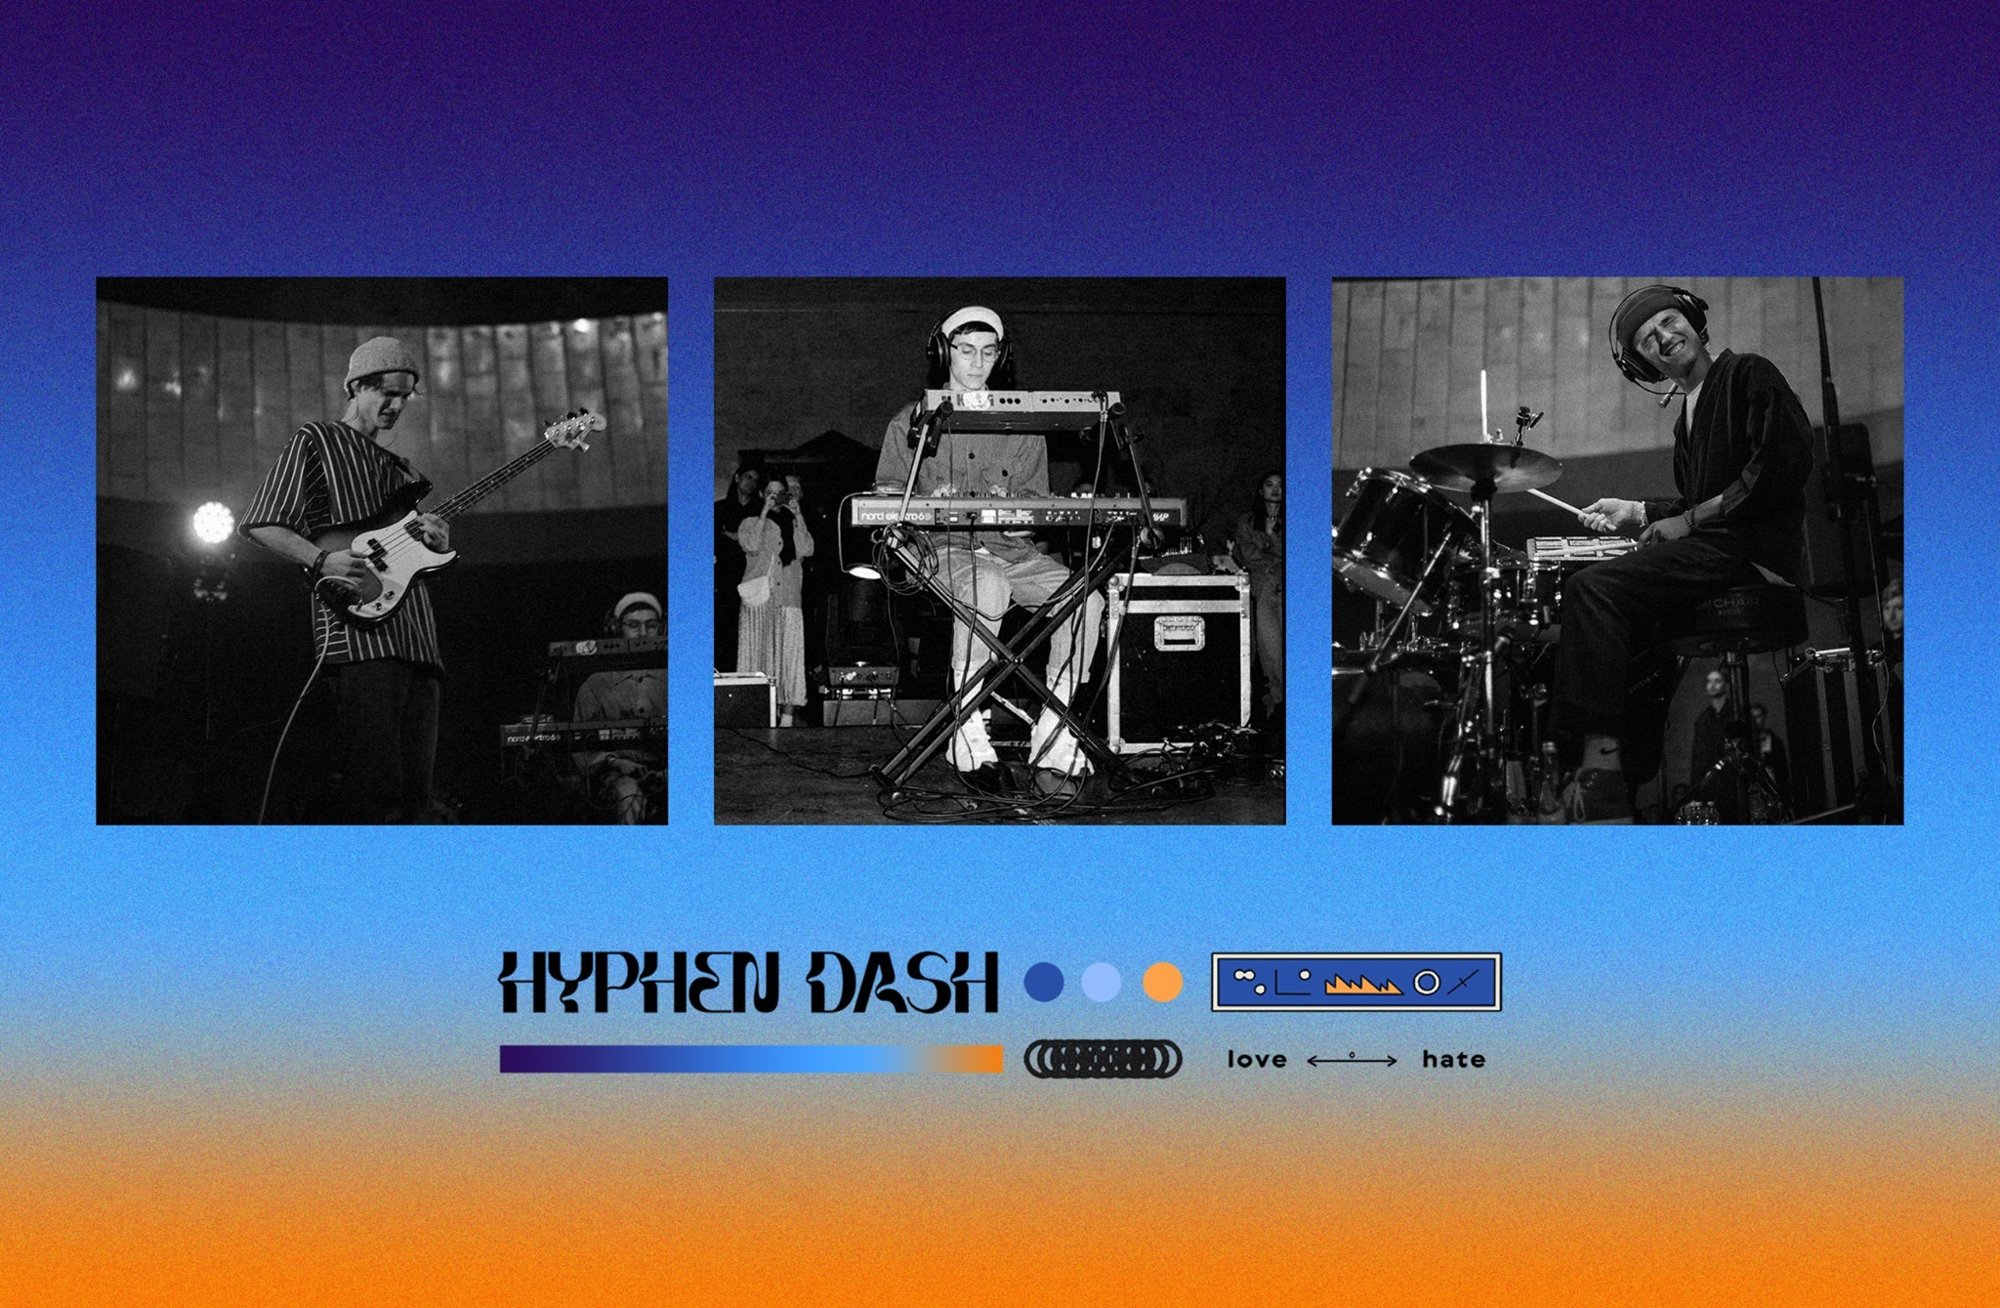 Hyphen Dash